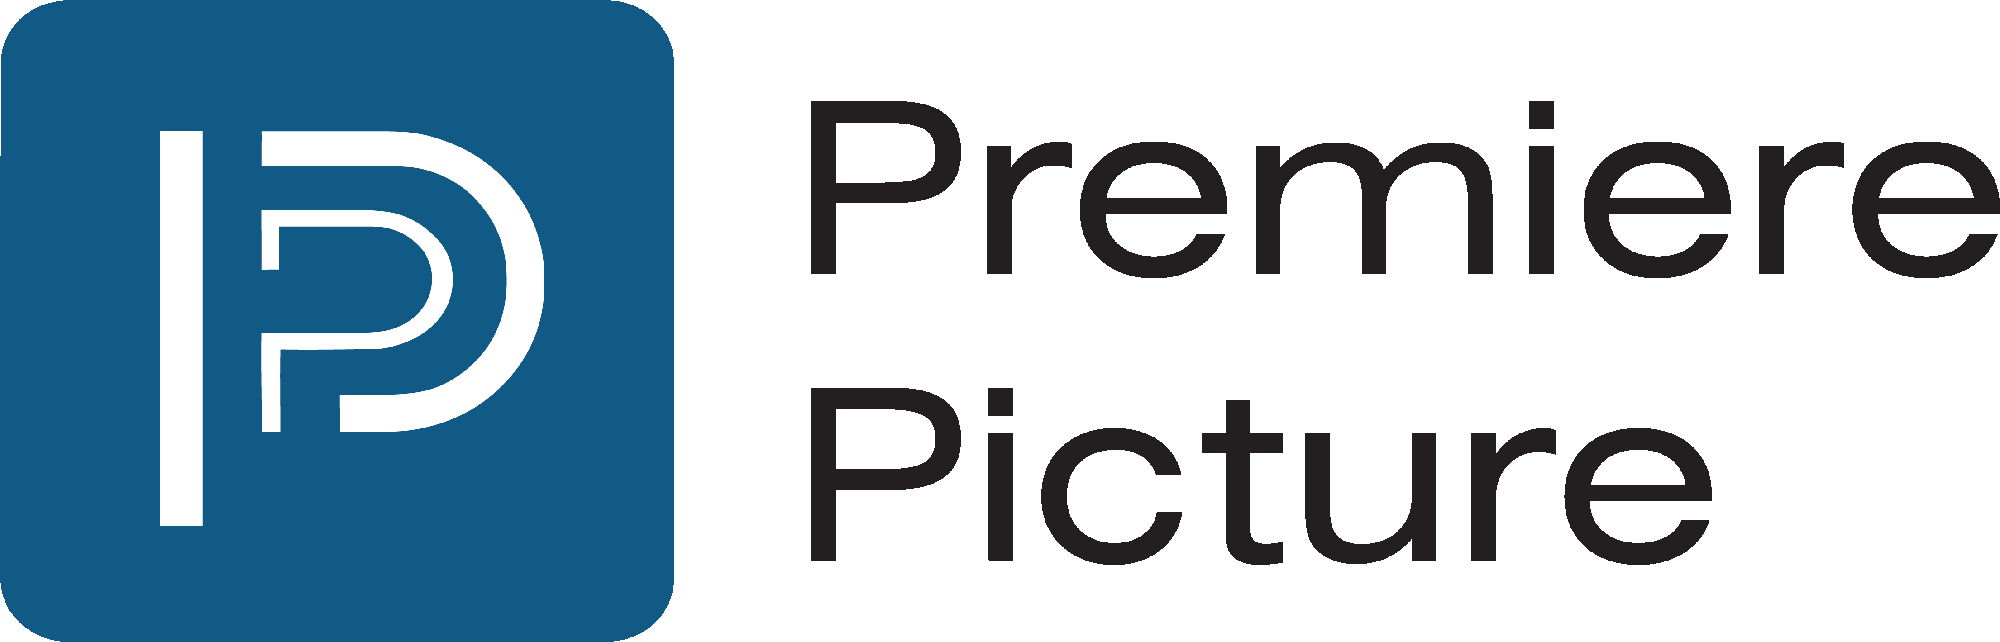 Premiere Picture - company